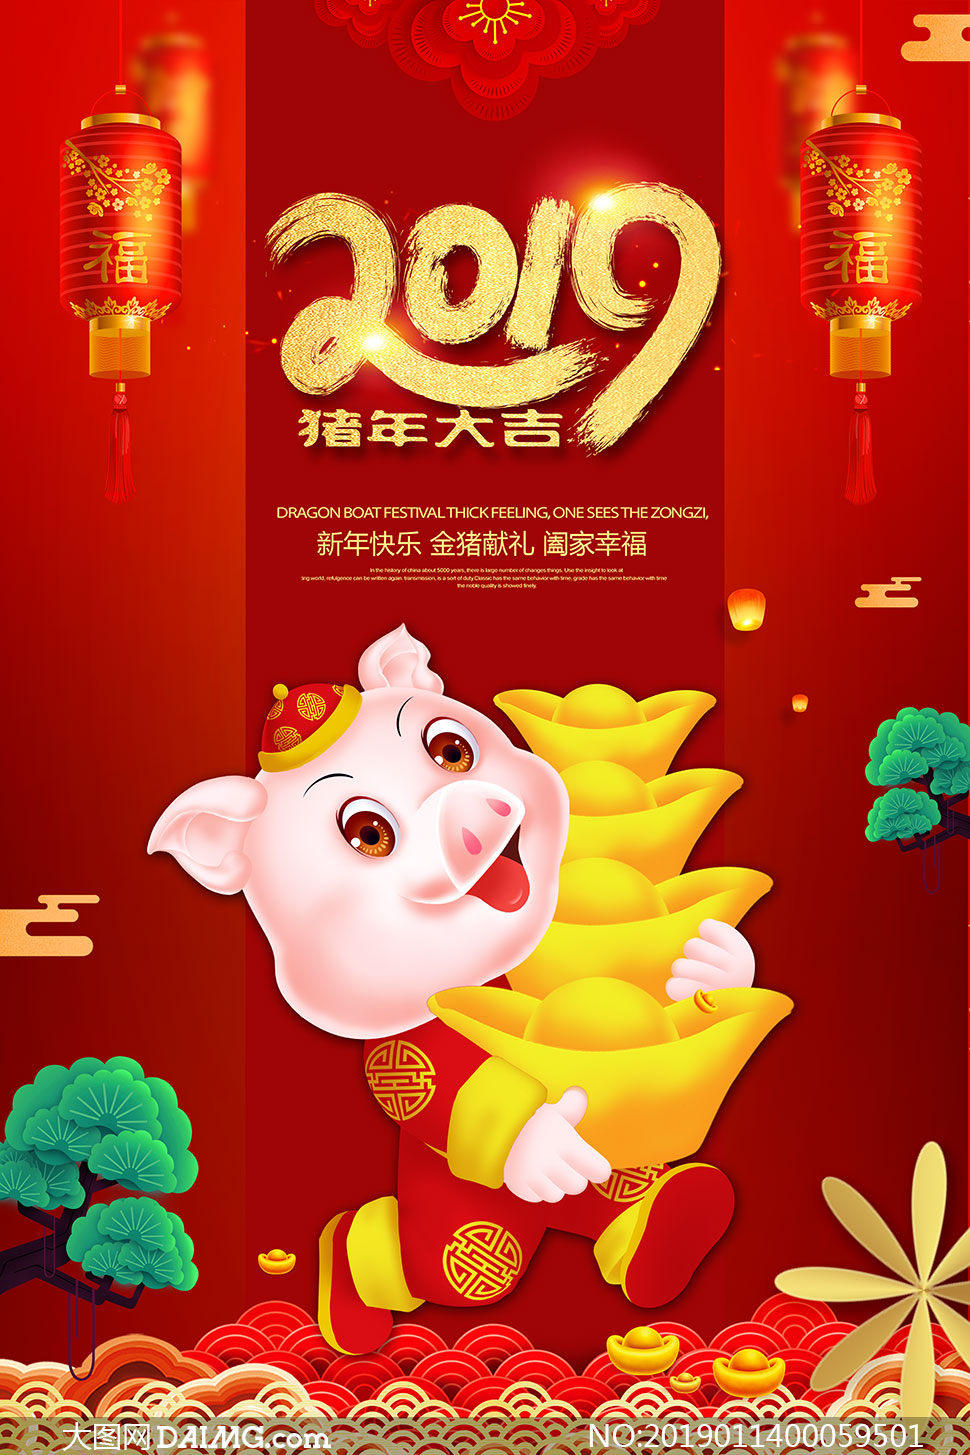 567900奇人透码中特fl:2019猪年大吉宣传海报设计PSD模板